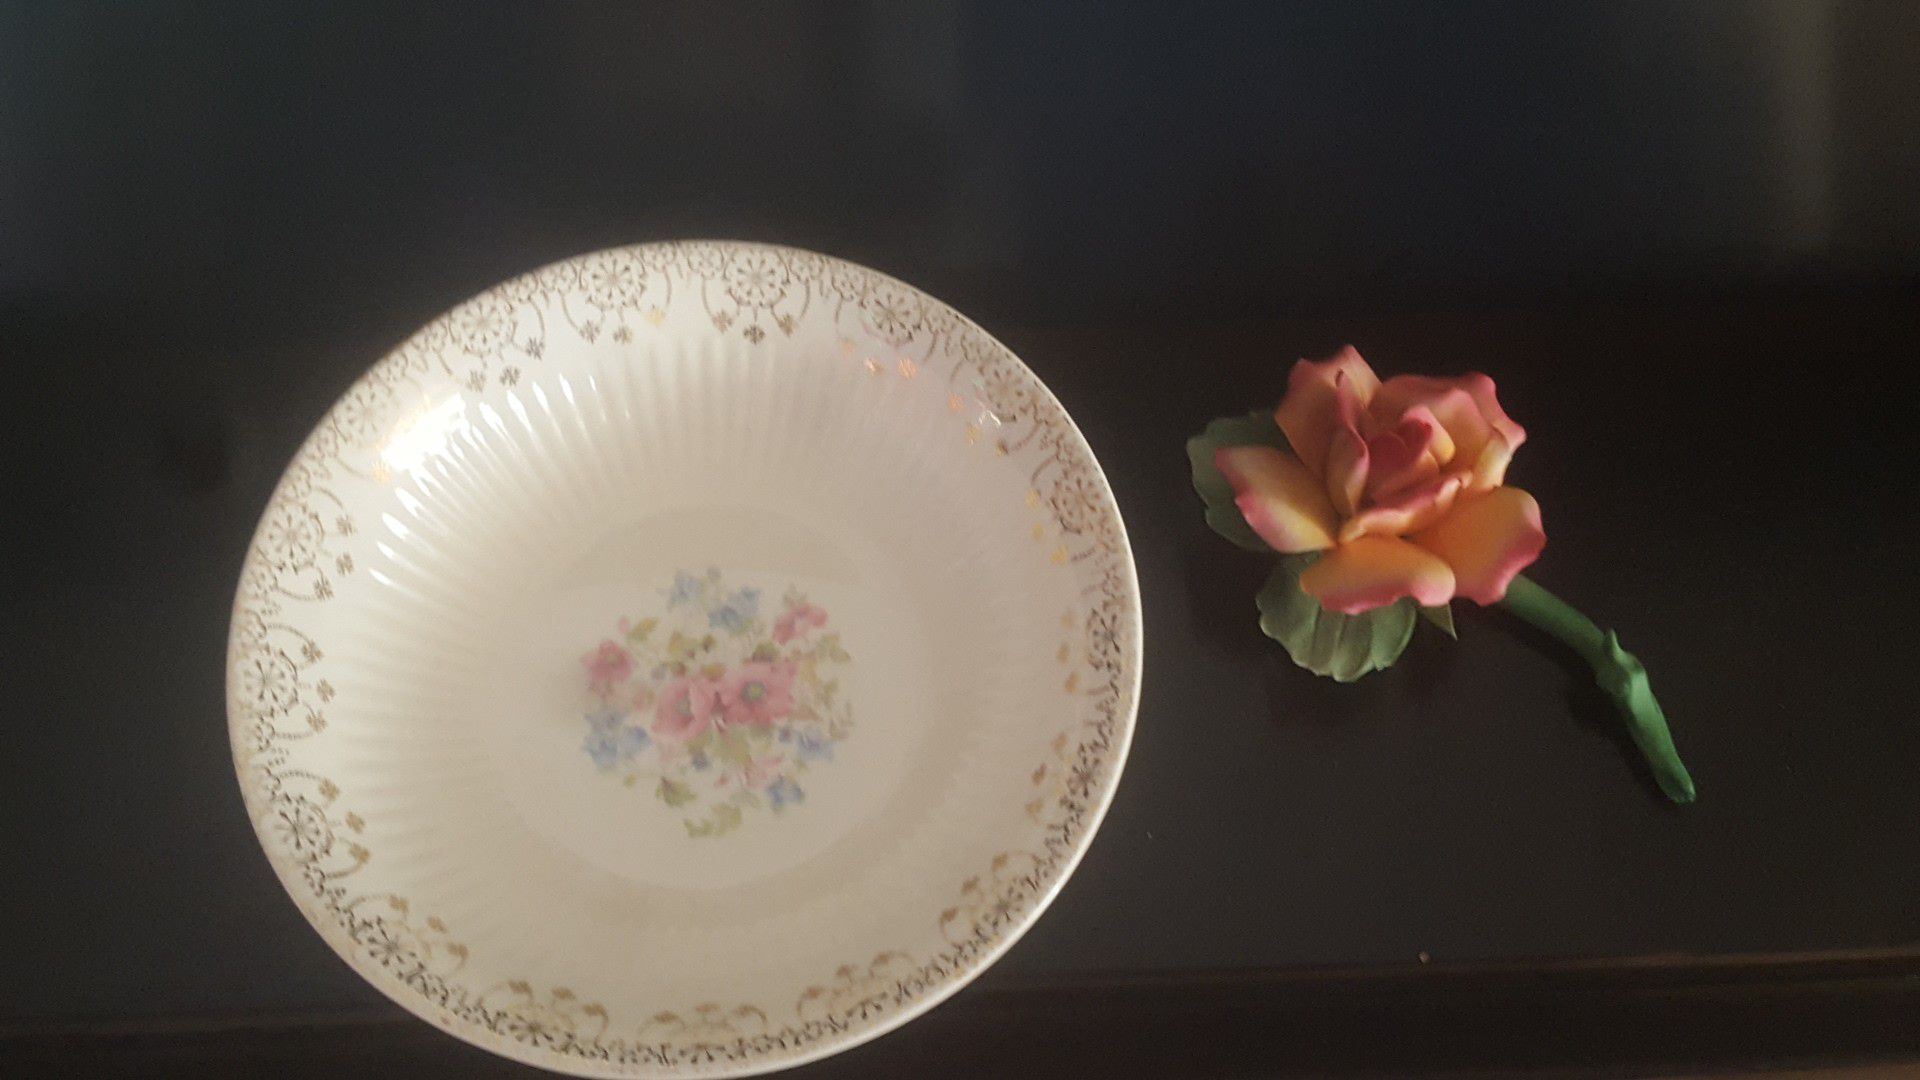 Vintage 22k Gold leaf 8" Bowl, and Delicate Ceramic Rose, $15